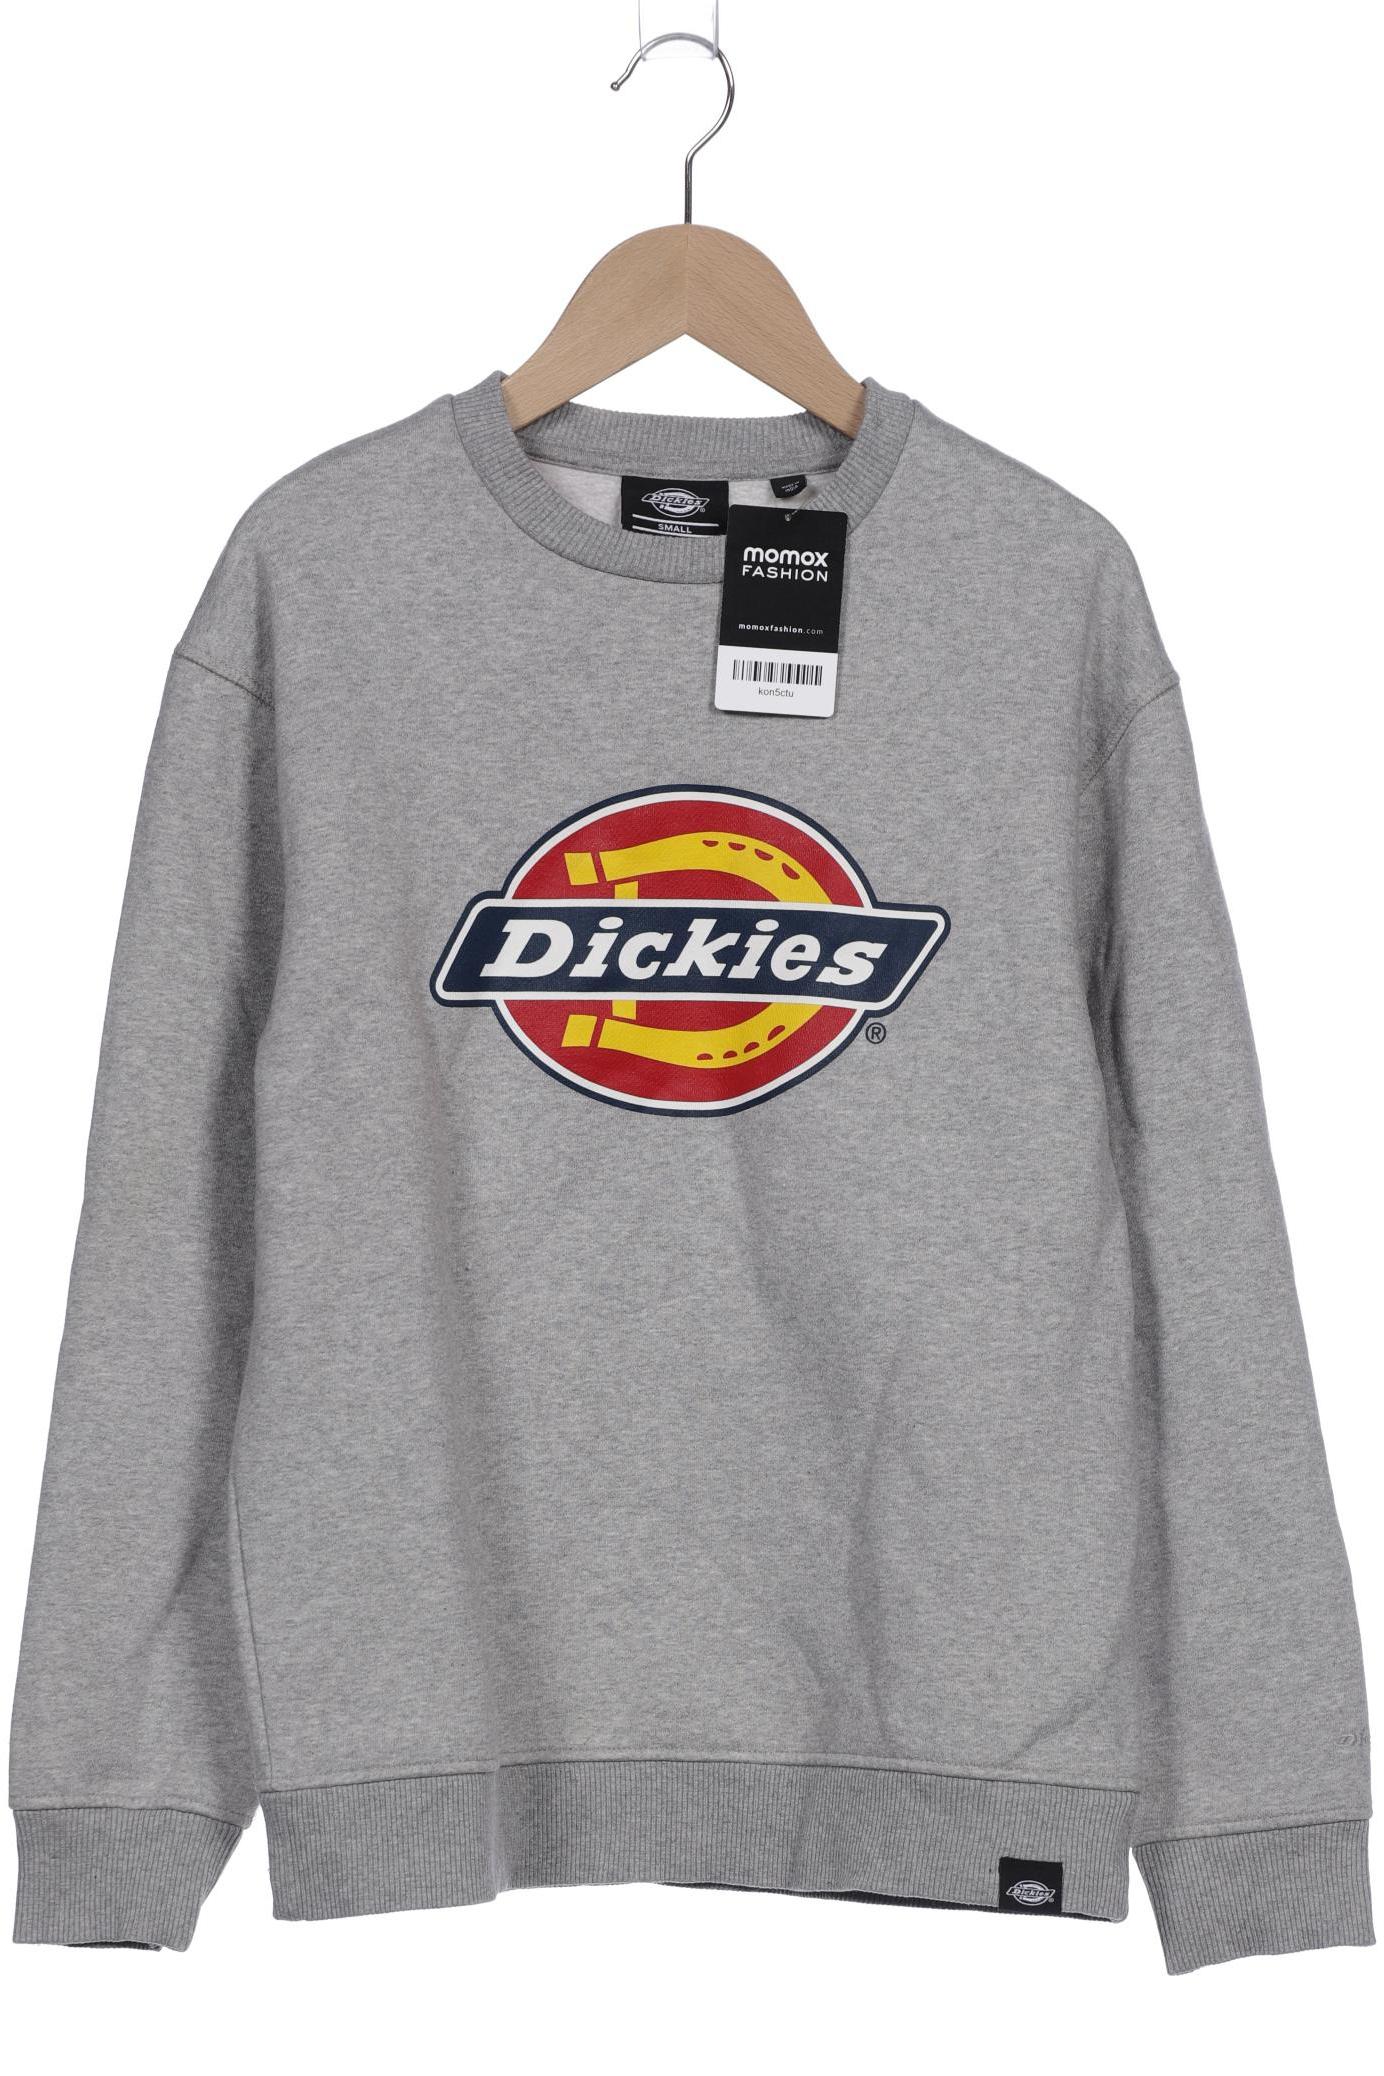 Dickies Damen Sweatshirt, grau, Gr. 36 von Dickies